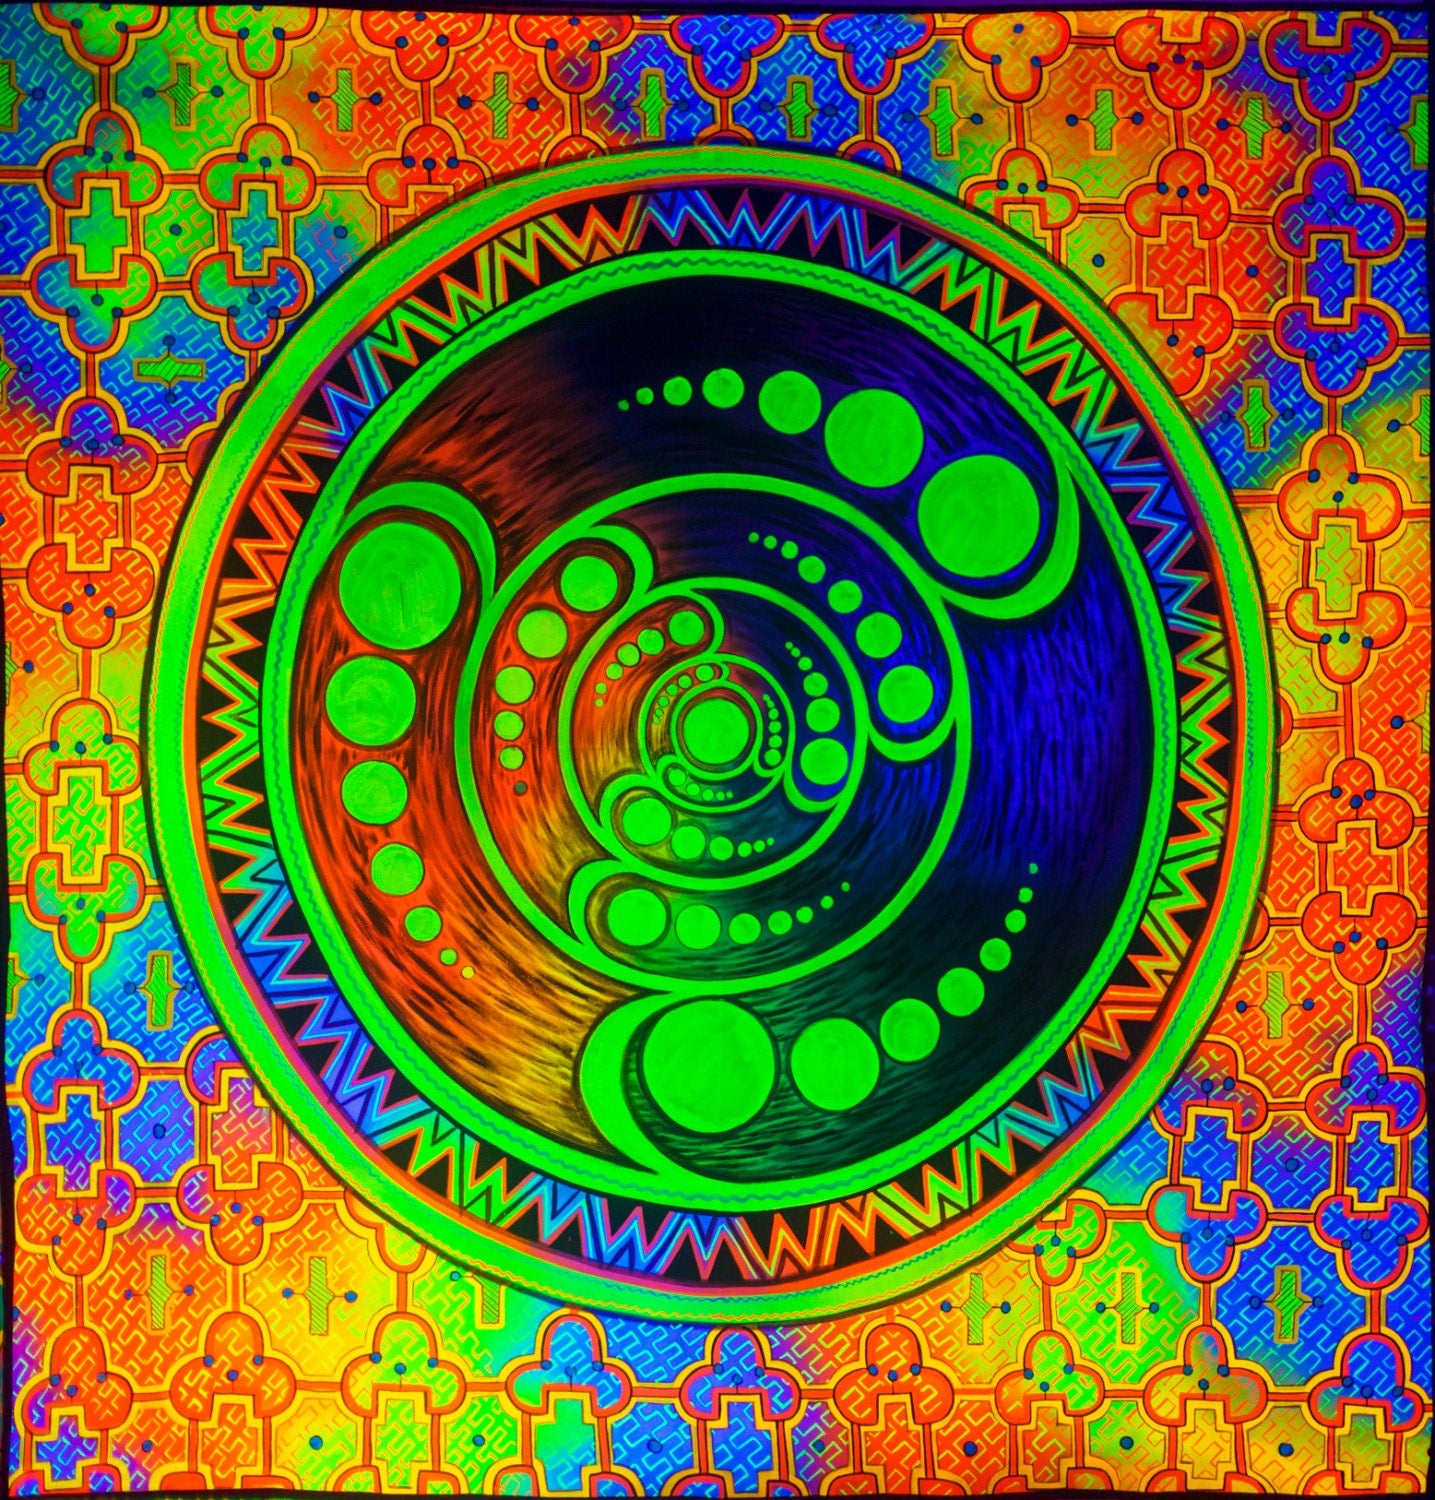 Crop Circle Shipibo UV painting big size - 1.5mx1.5m - fully blacklight glowing colors - psychedelic crop circle shipibo art